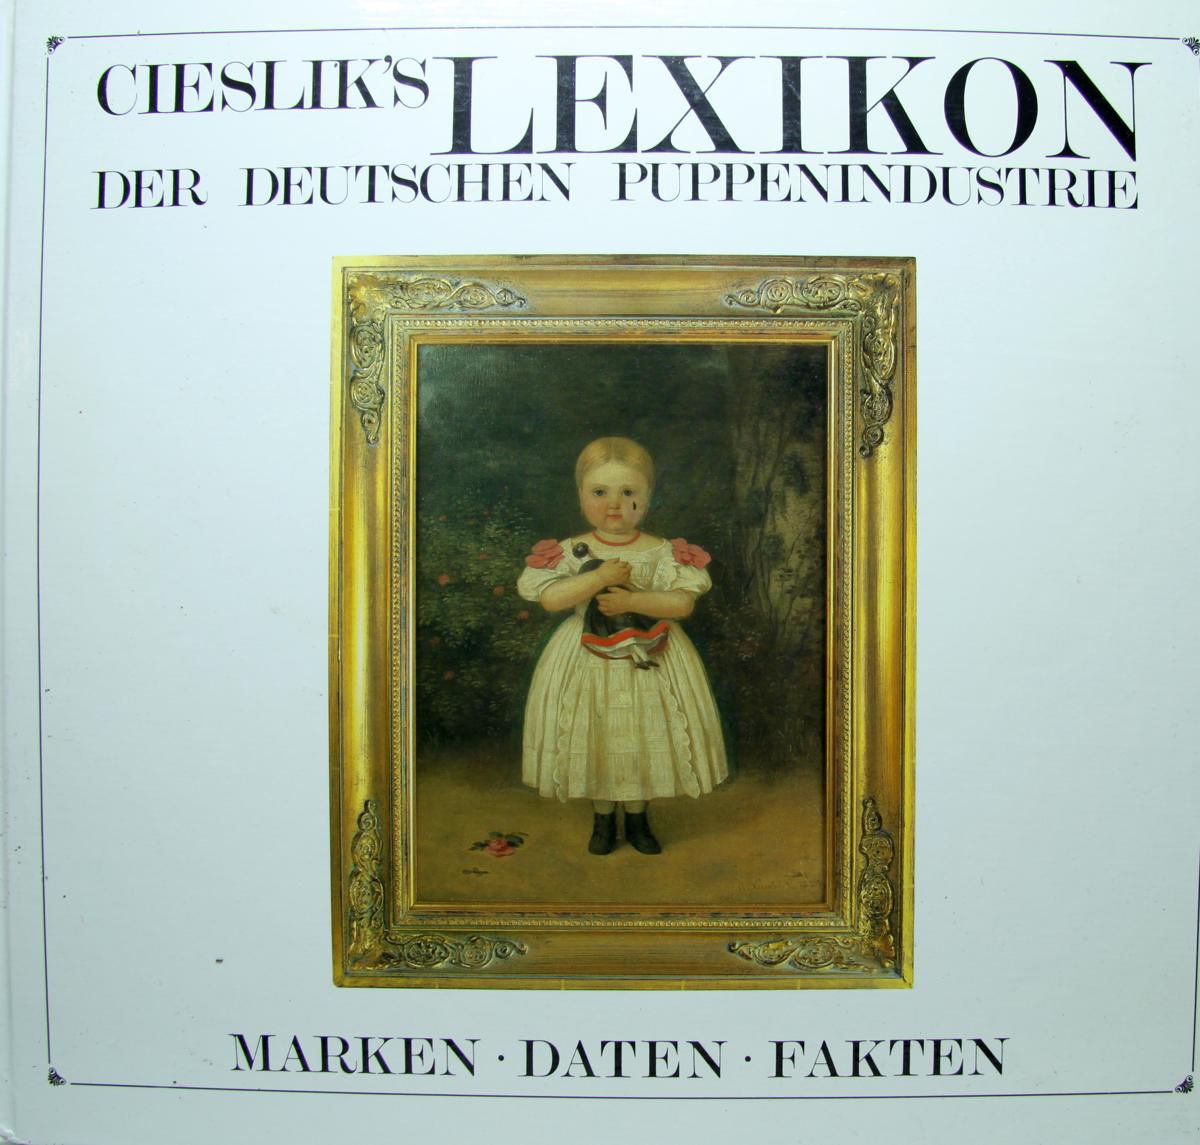 Buch "Cieslik`s Lexikon der deutschen Puppenindustrie"